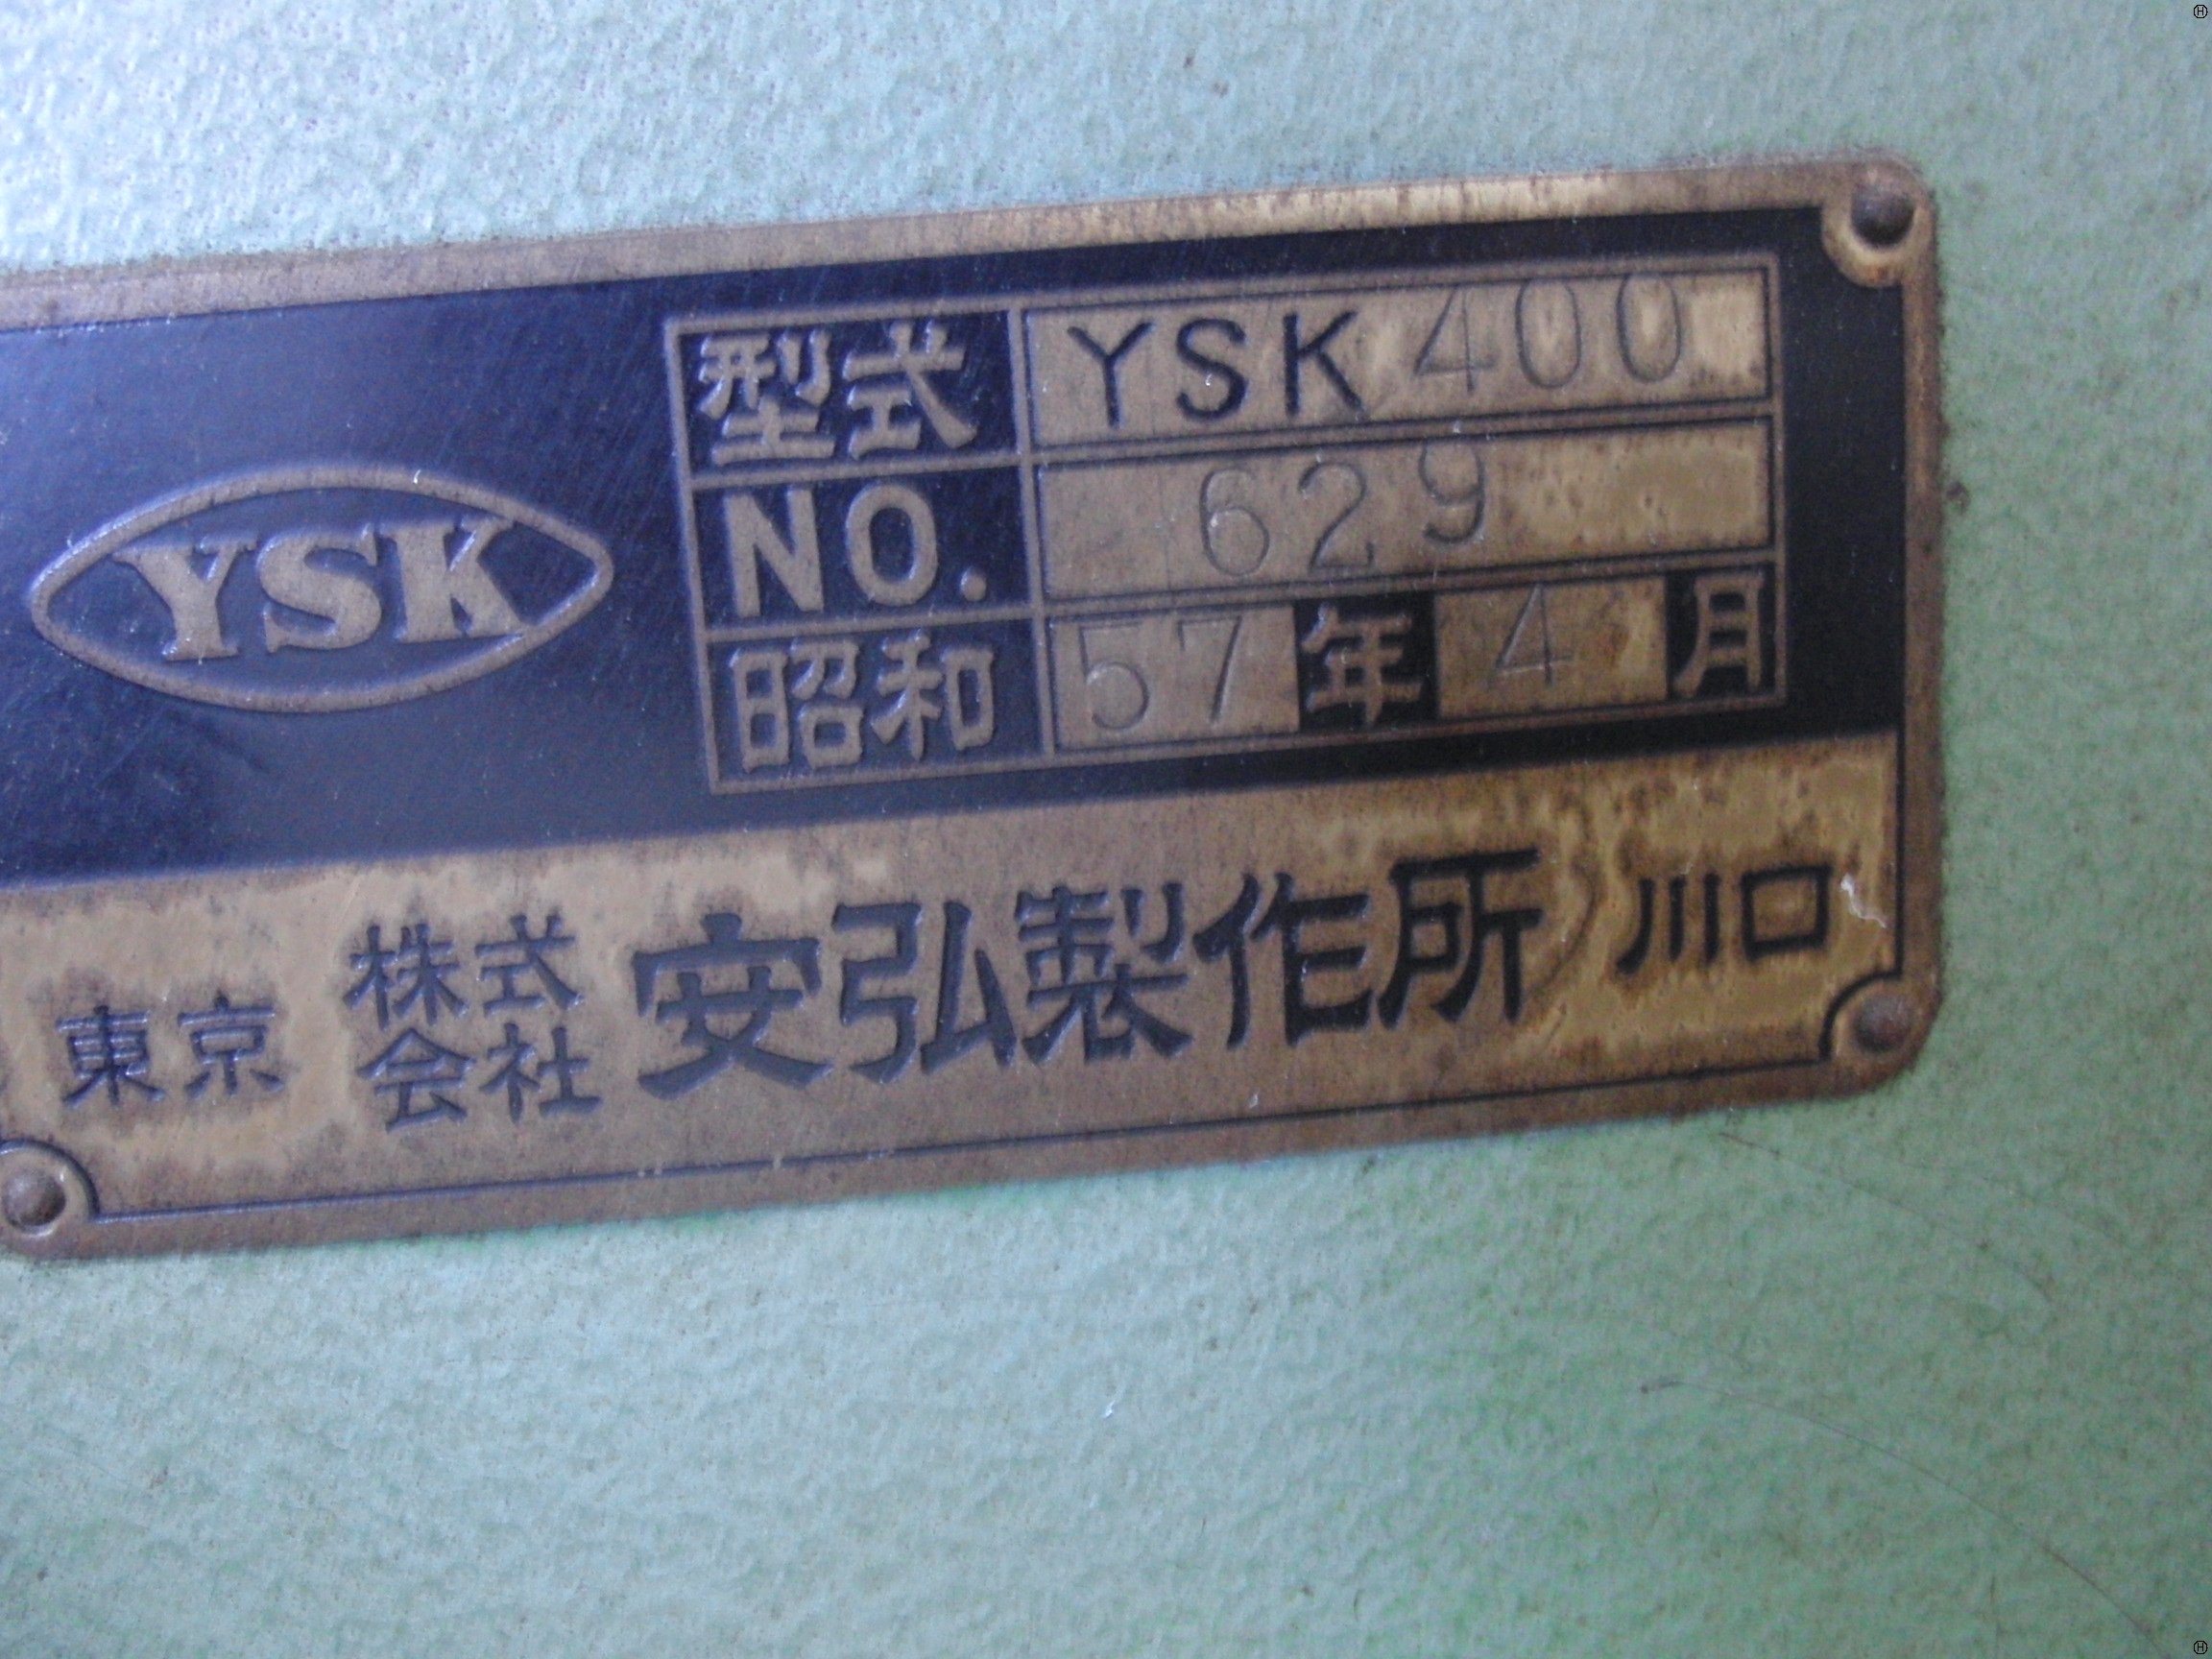 安弘製作所 YSK-400 コンターマシン